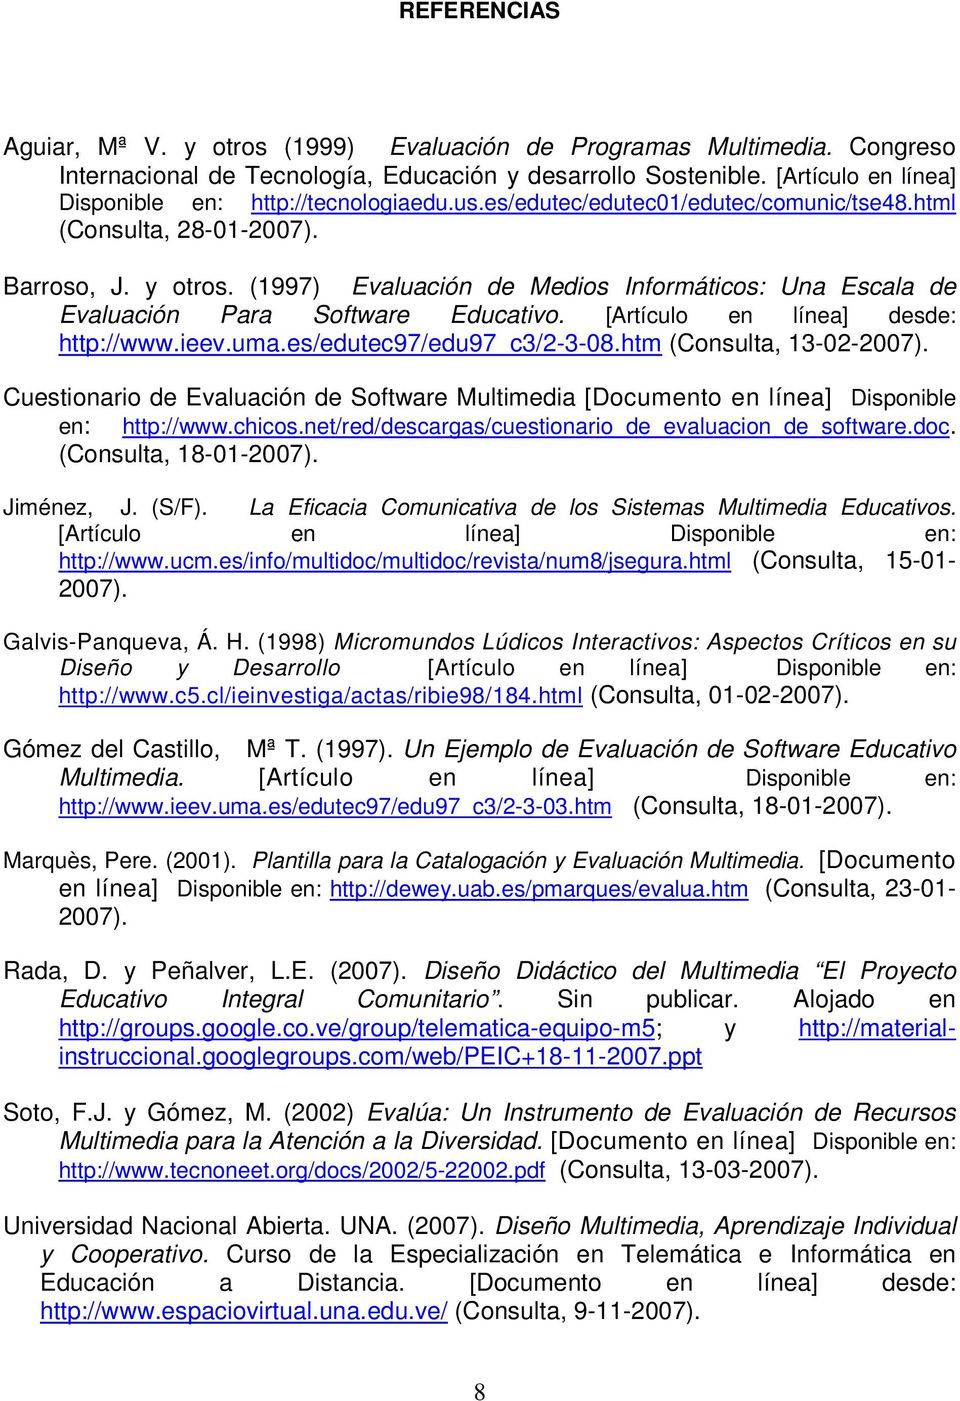 (1997) Evaluación de Medios Informáticos: Una Escala de Evaluación Para Software Educativo. [Artículo en línea] desde: http://www.ieev.uma.es/edutec97/edu97_c3/2-3-08.htm (Consulta, 13-02-2007).